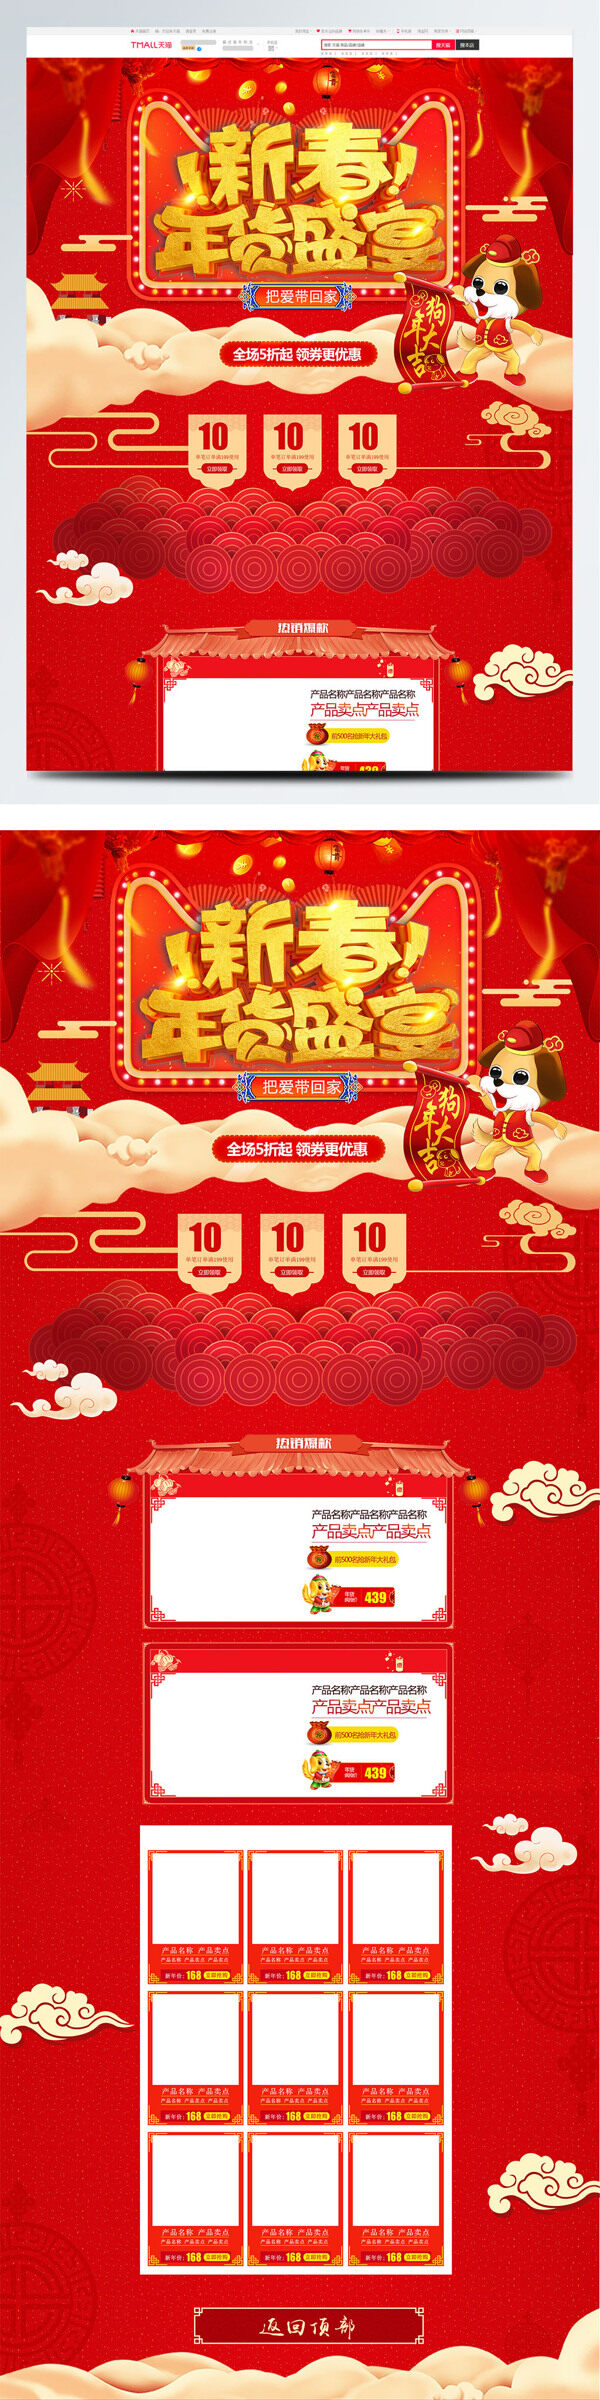 红色喜庆电商促销新年主题休闲食品首页模版